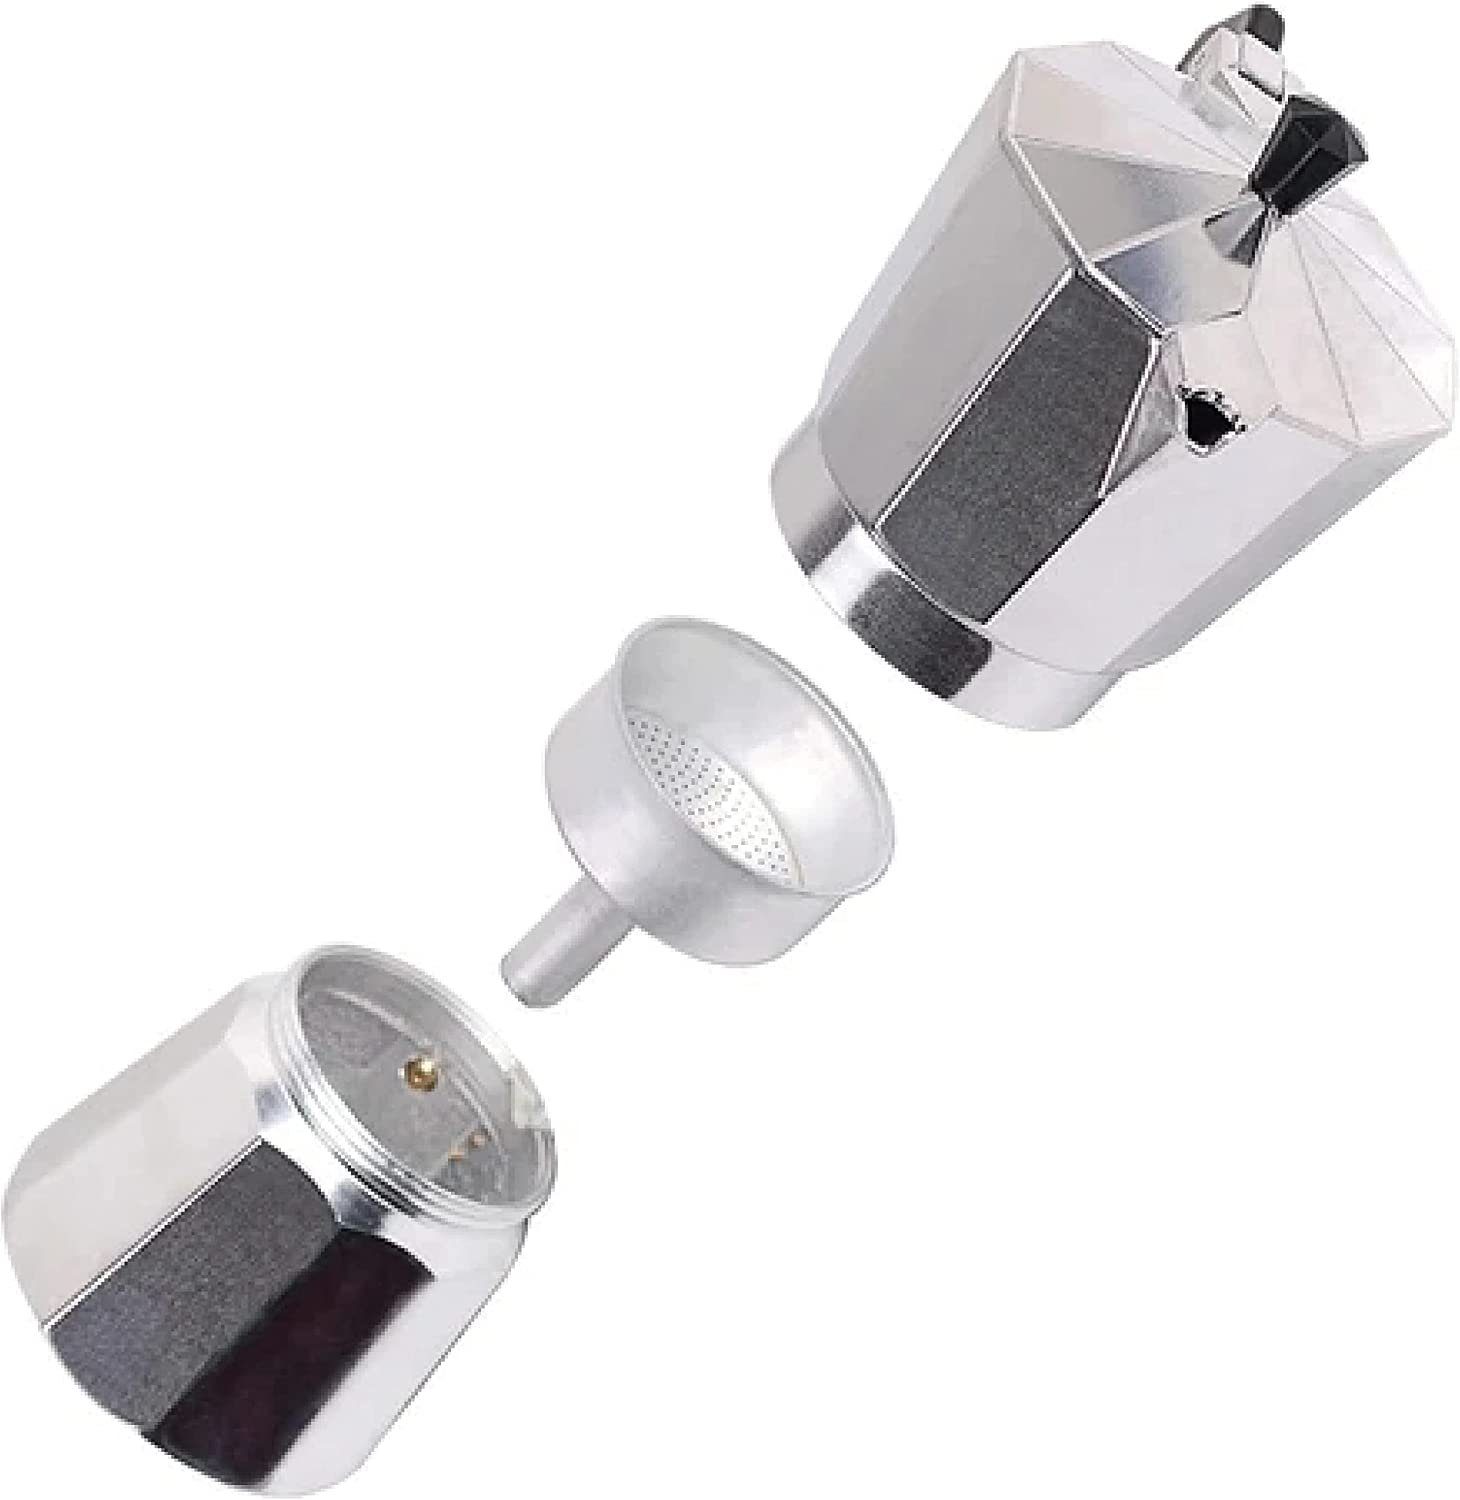 Tassen) Kaffeemaschine Filterkaffeemaschine DOTMALL (12 EDM Aluminium